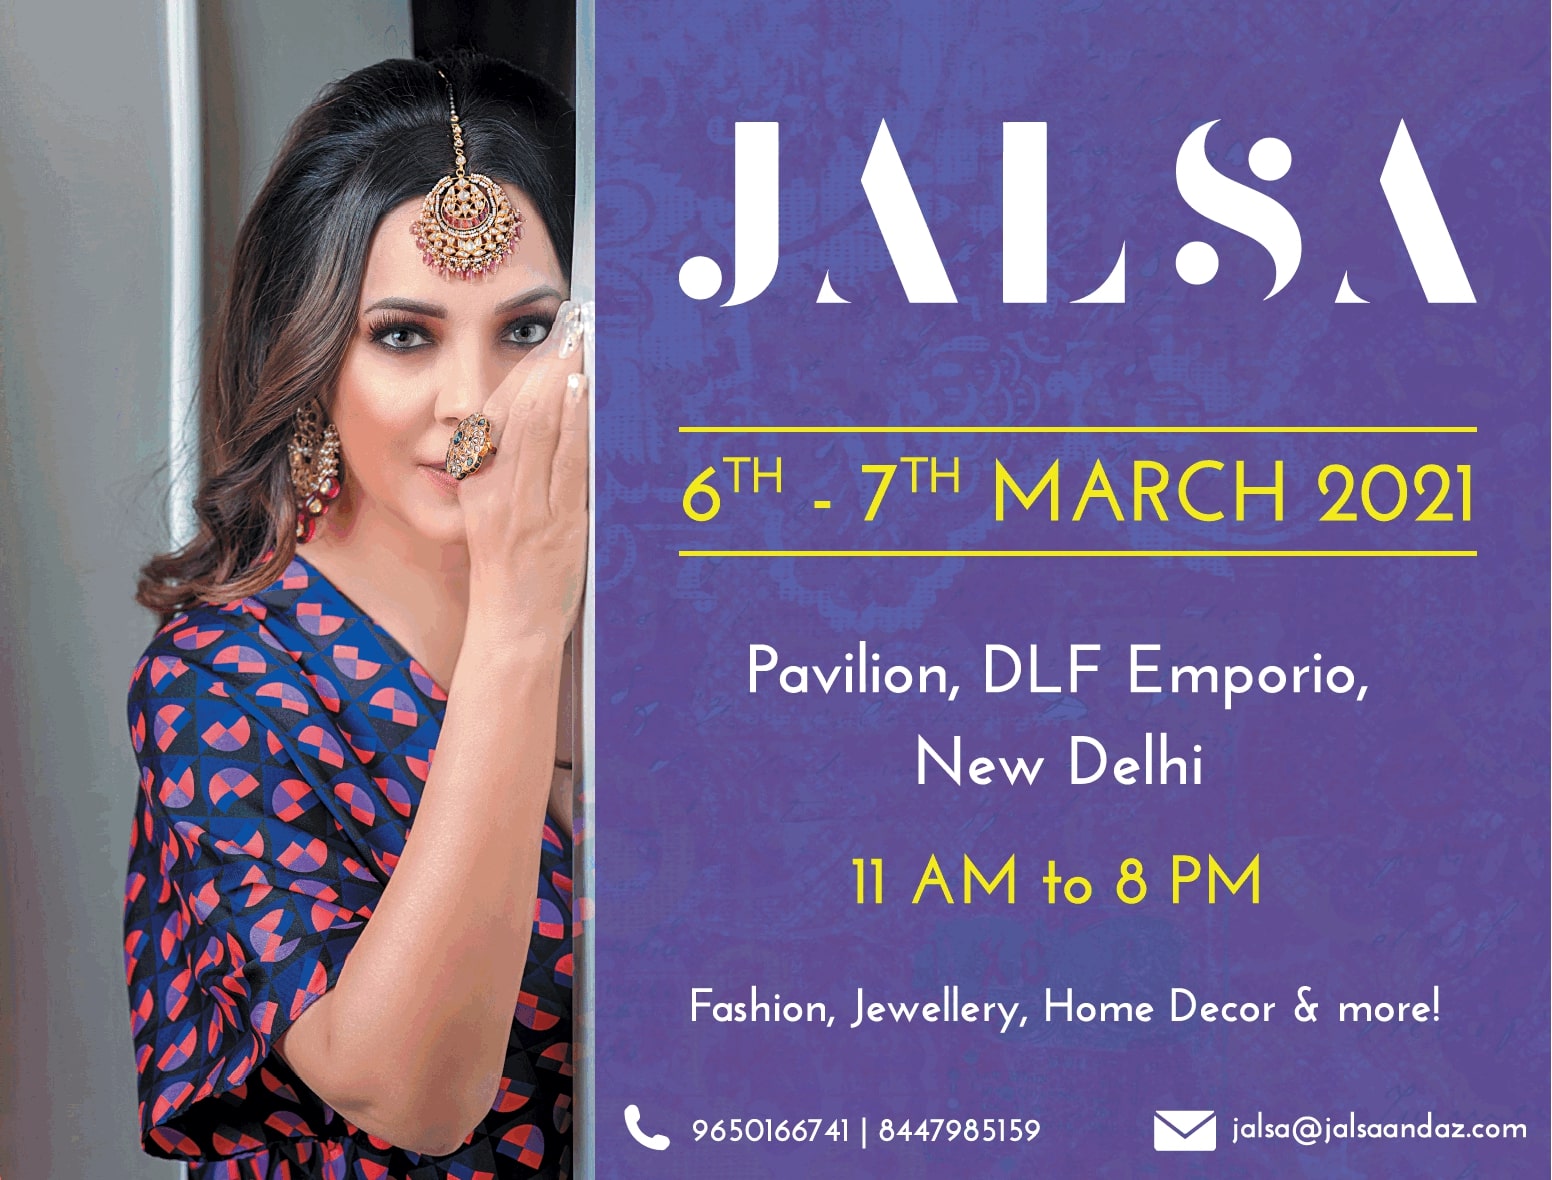 jalsa-6th-7th-march-pavilion-dlf-emporio-new-delhi-ad-delhi-times-07-03-2021